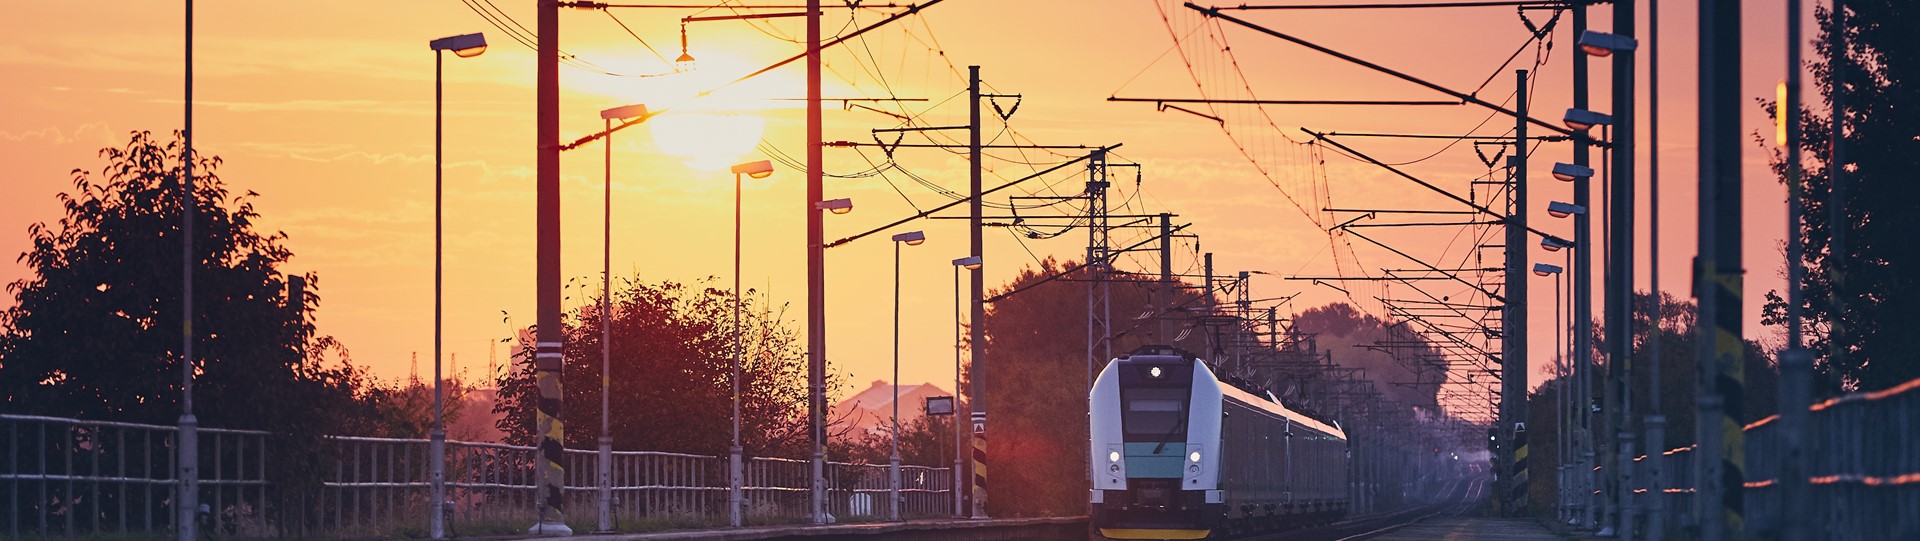 10 redenen om een treinreis naar Zuid-Frankrijk te boeken